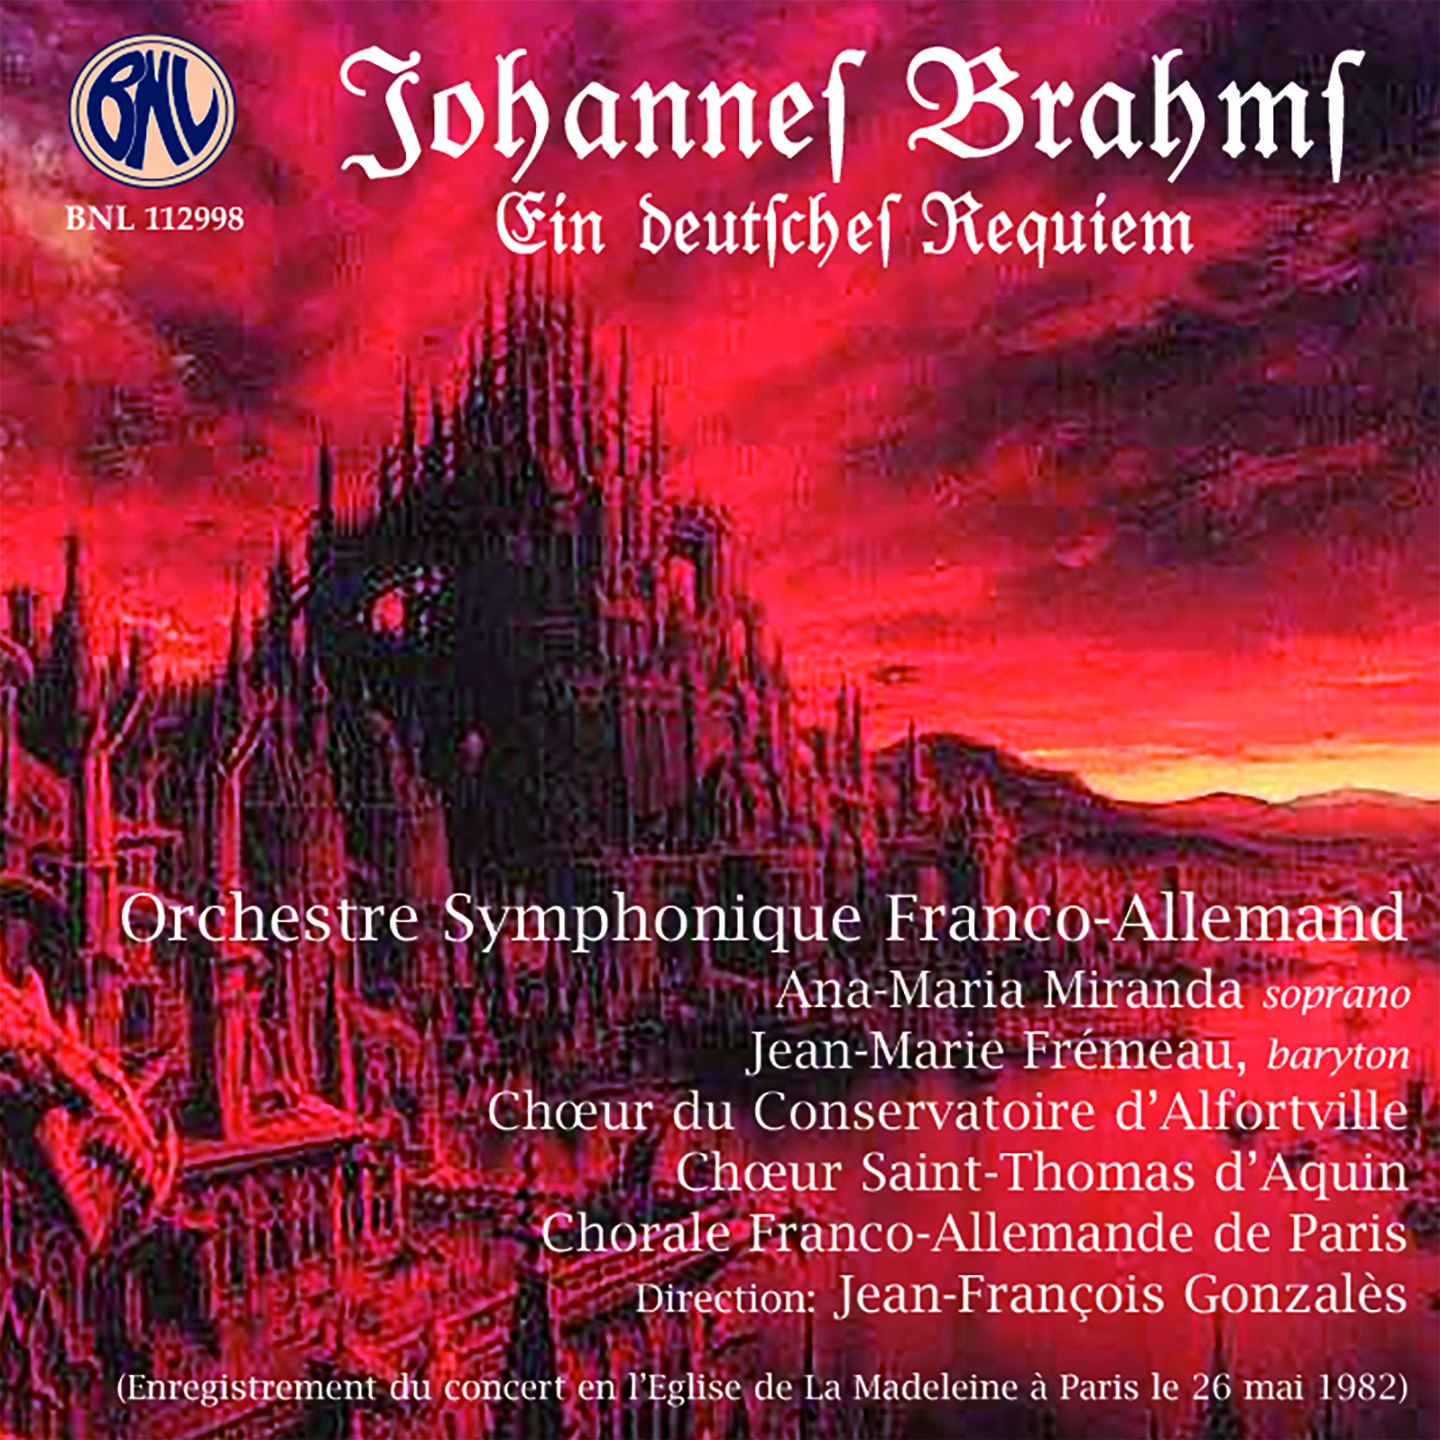 Orchestre Symphonique Franco-Allemand - Ein deutsches Requiem, Op. 45:Denn wir haben hie keine bleibende Statt